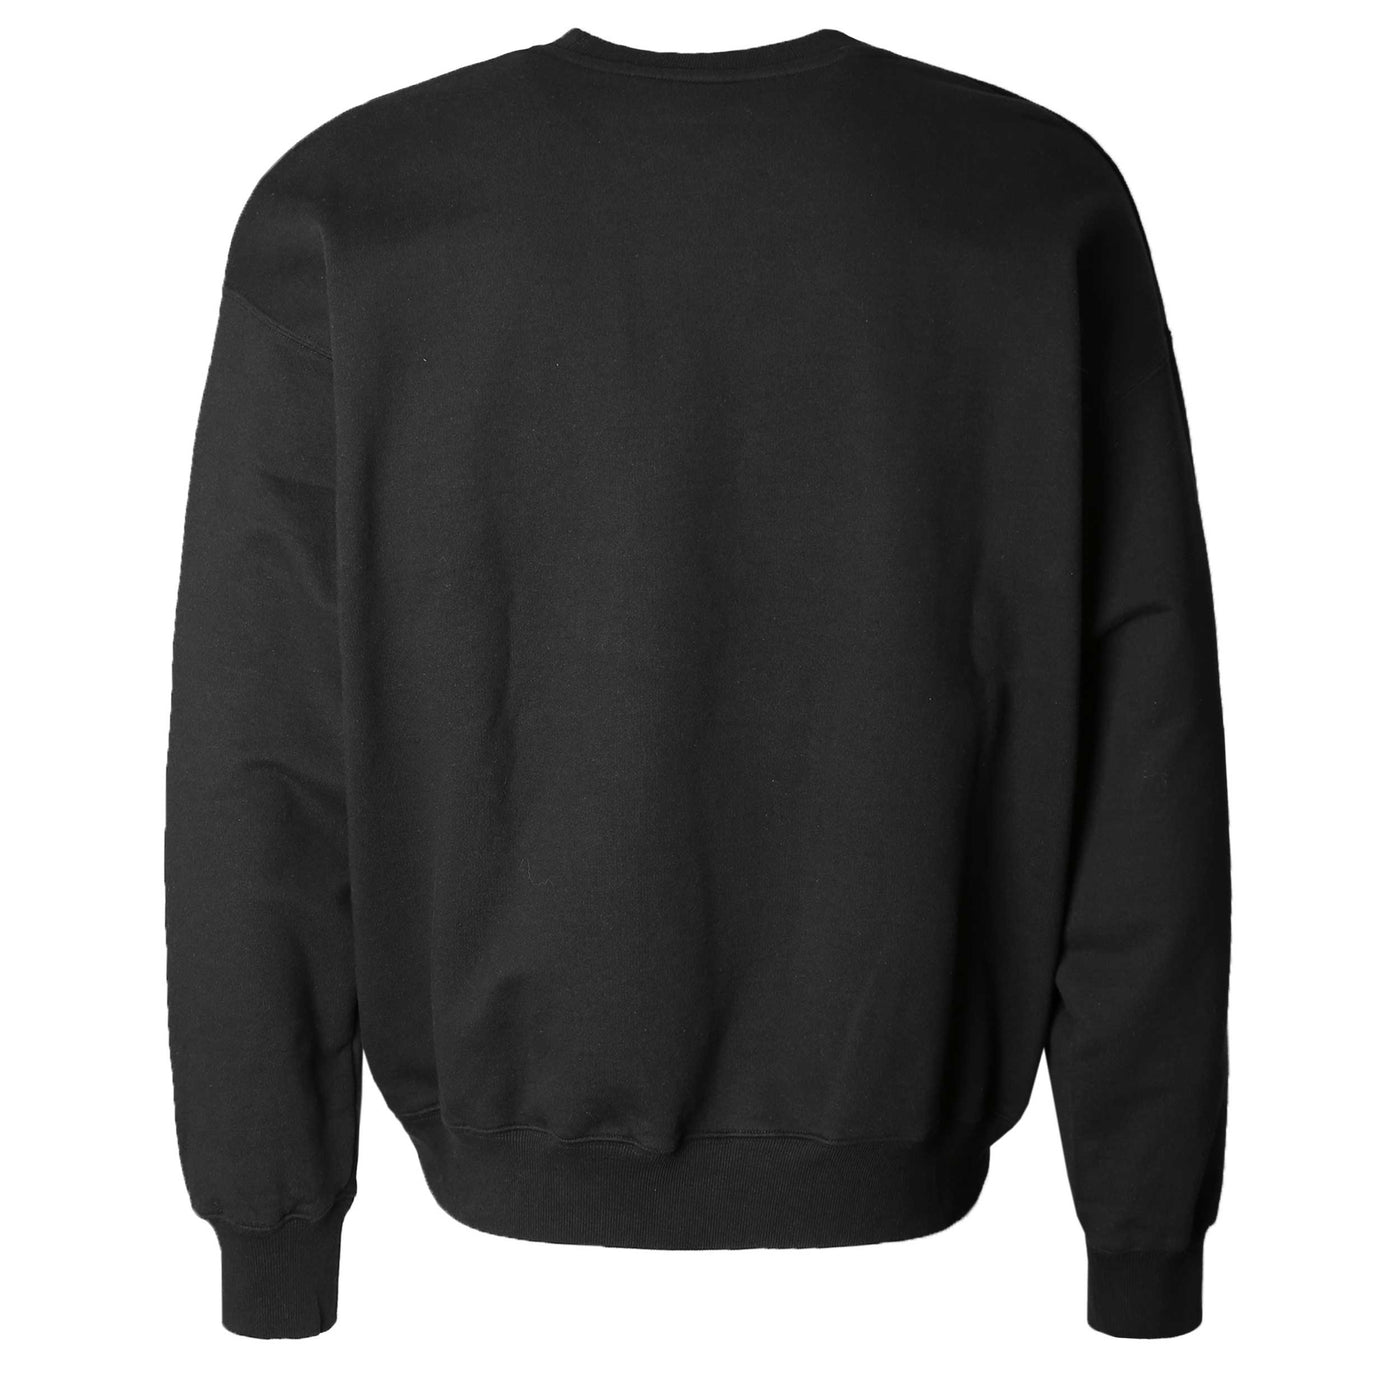 Mackage Justice Crew Neck Sweatshirt in Black